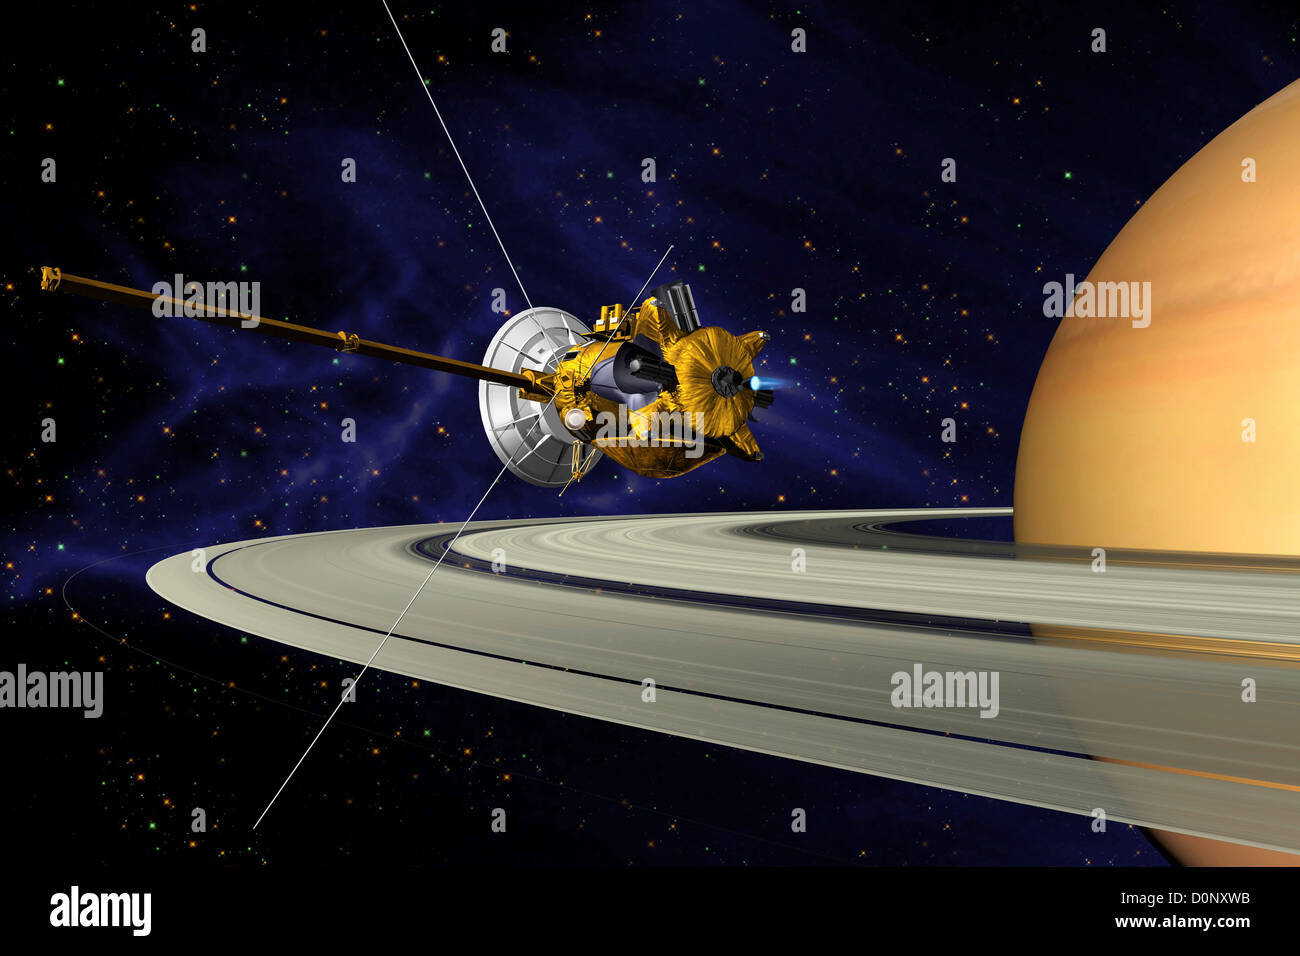 Concepción del artista de la nave Cassini en órbita alrededor de Saturno Foto de stock